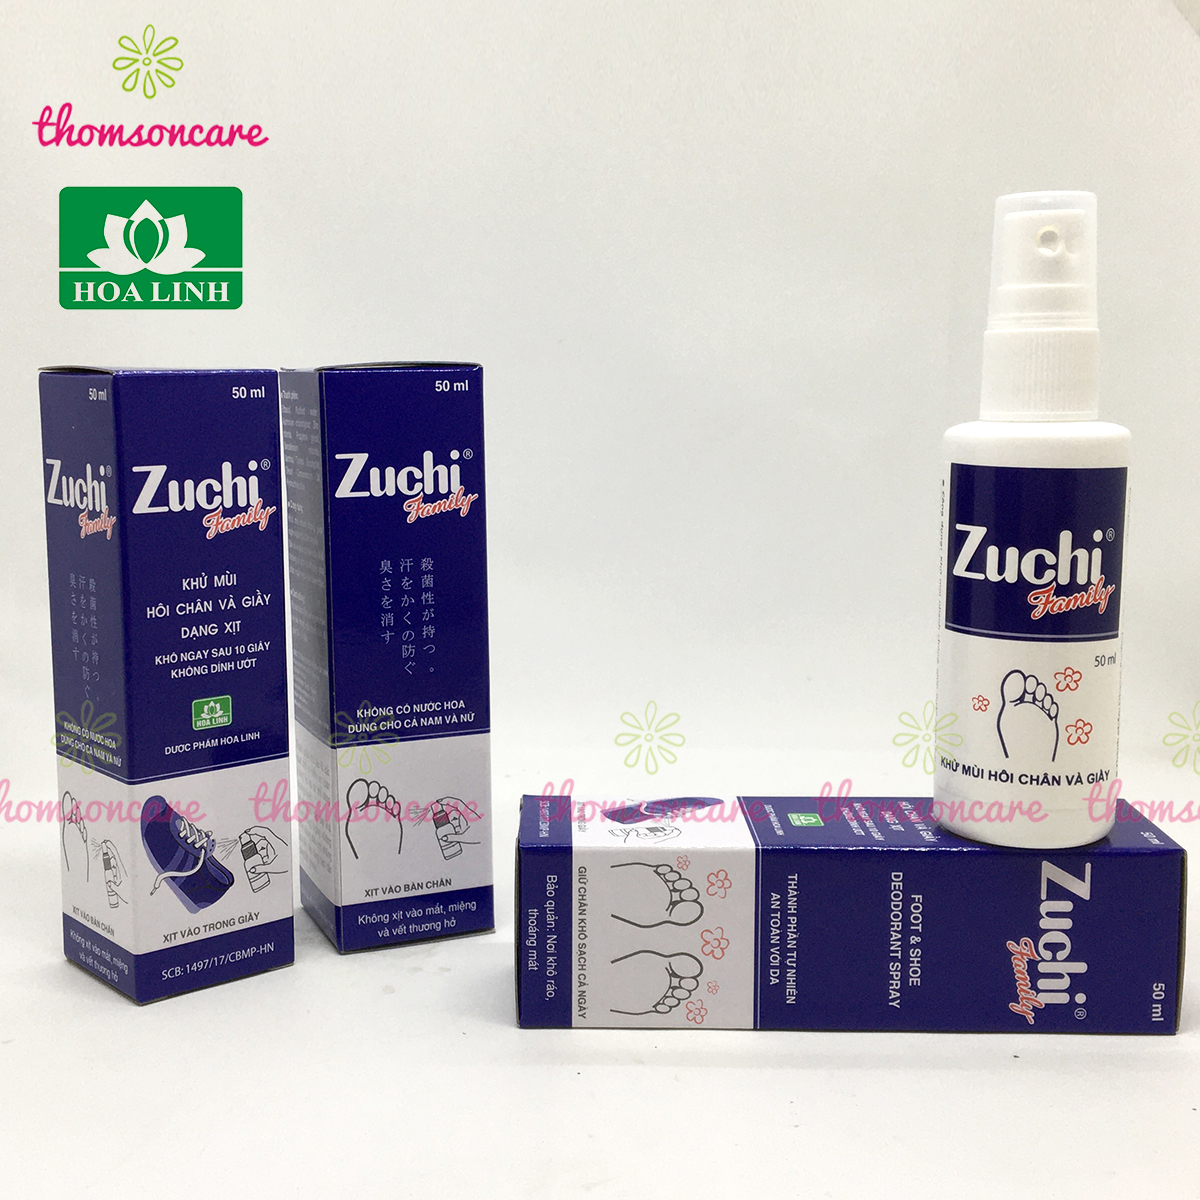 Zuchi Family - Xịt giày, khử mùi hôi chân, xịtt thơm giầy dép cho nam nữ, diệt vi khuẩn, giảm tiết mồ hôi